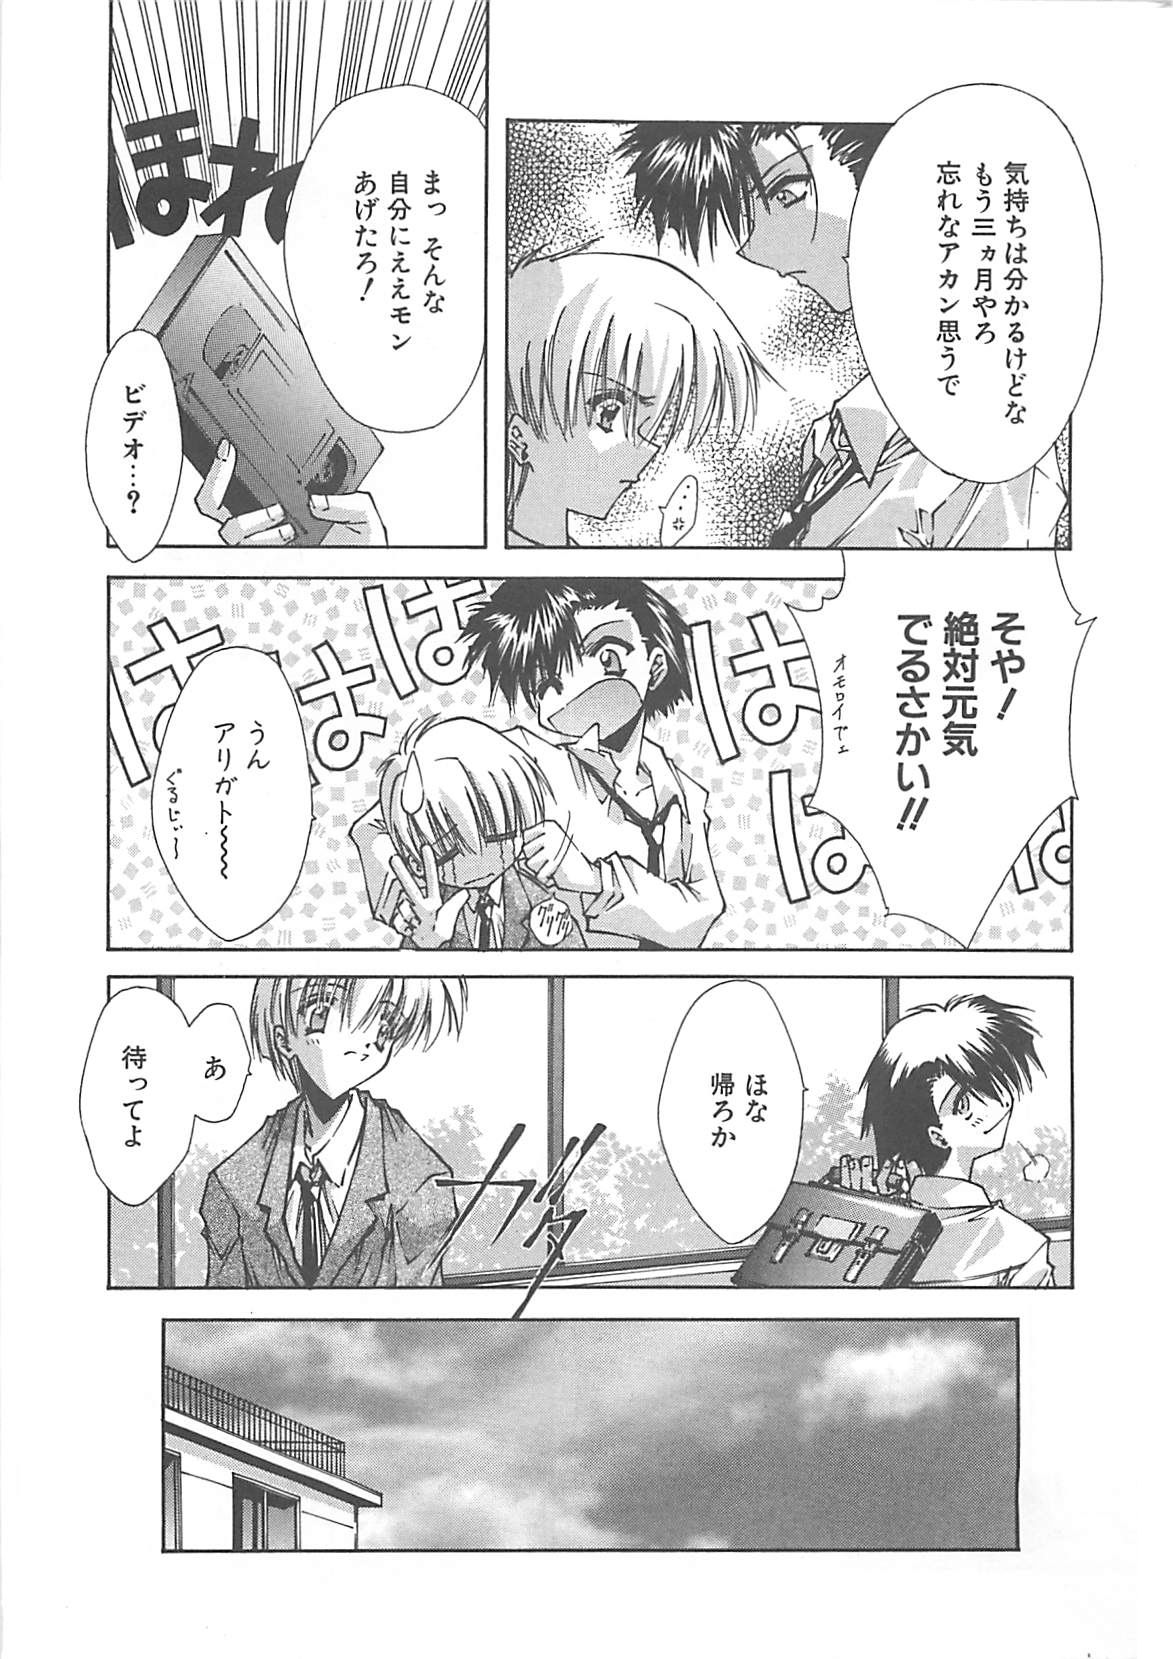 [Serizawa Katsumi] Kanon page 17 full